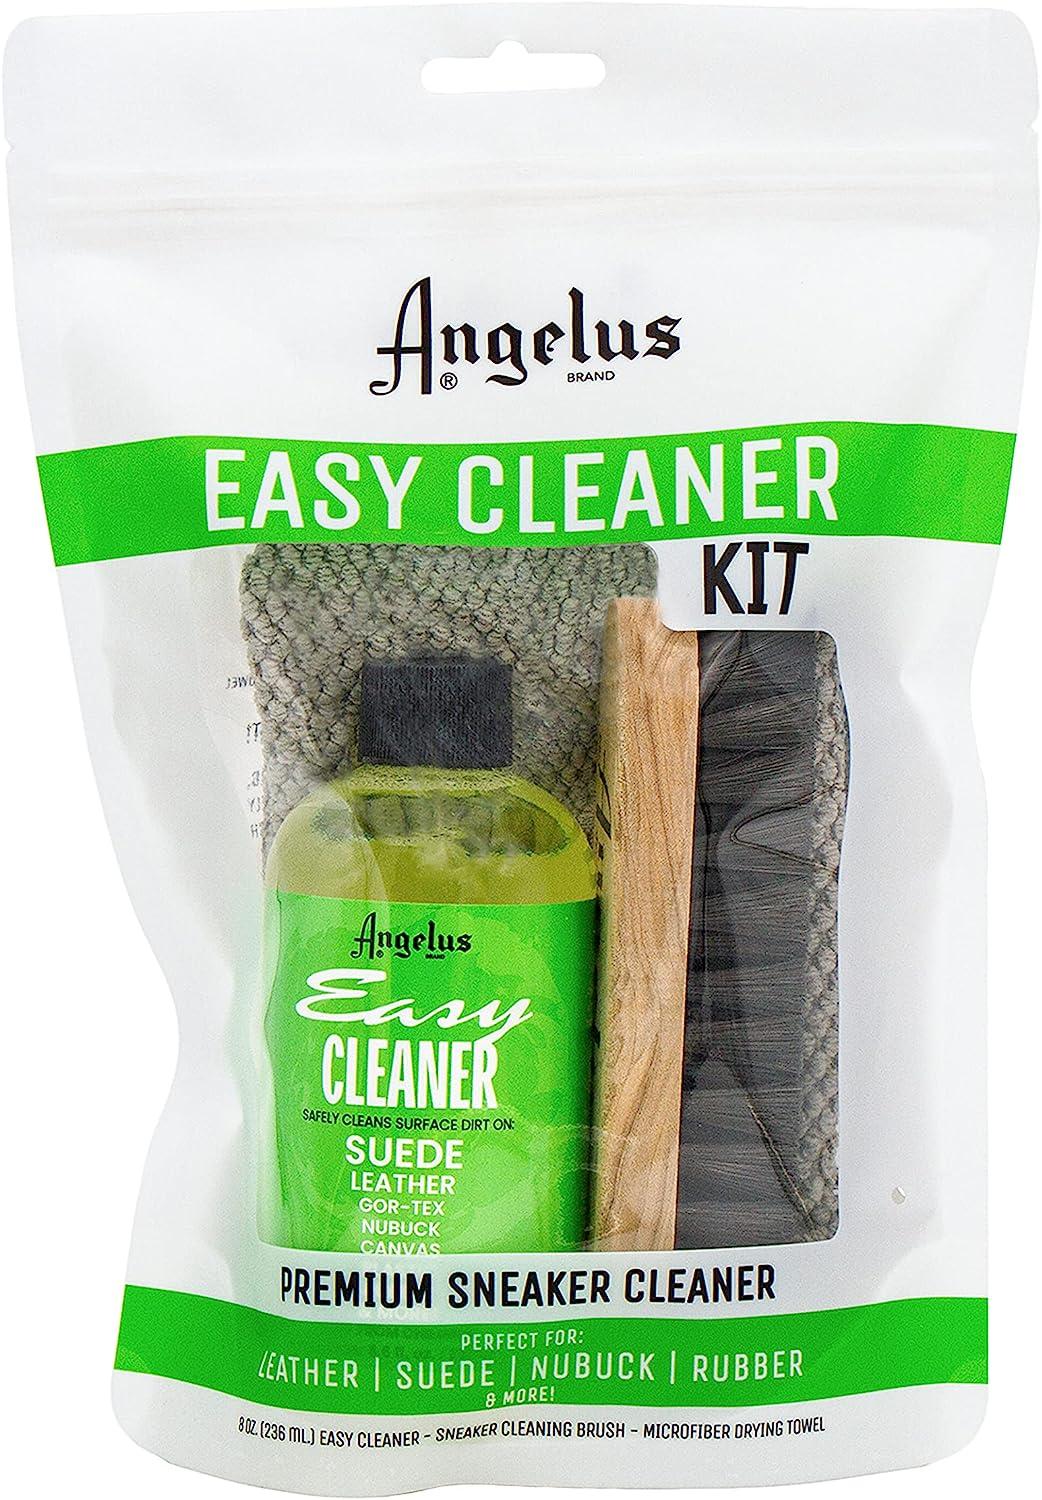 Angelus Foam-Tex Cleaning Kit, Sneaker Cleaner